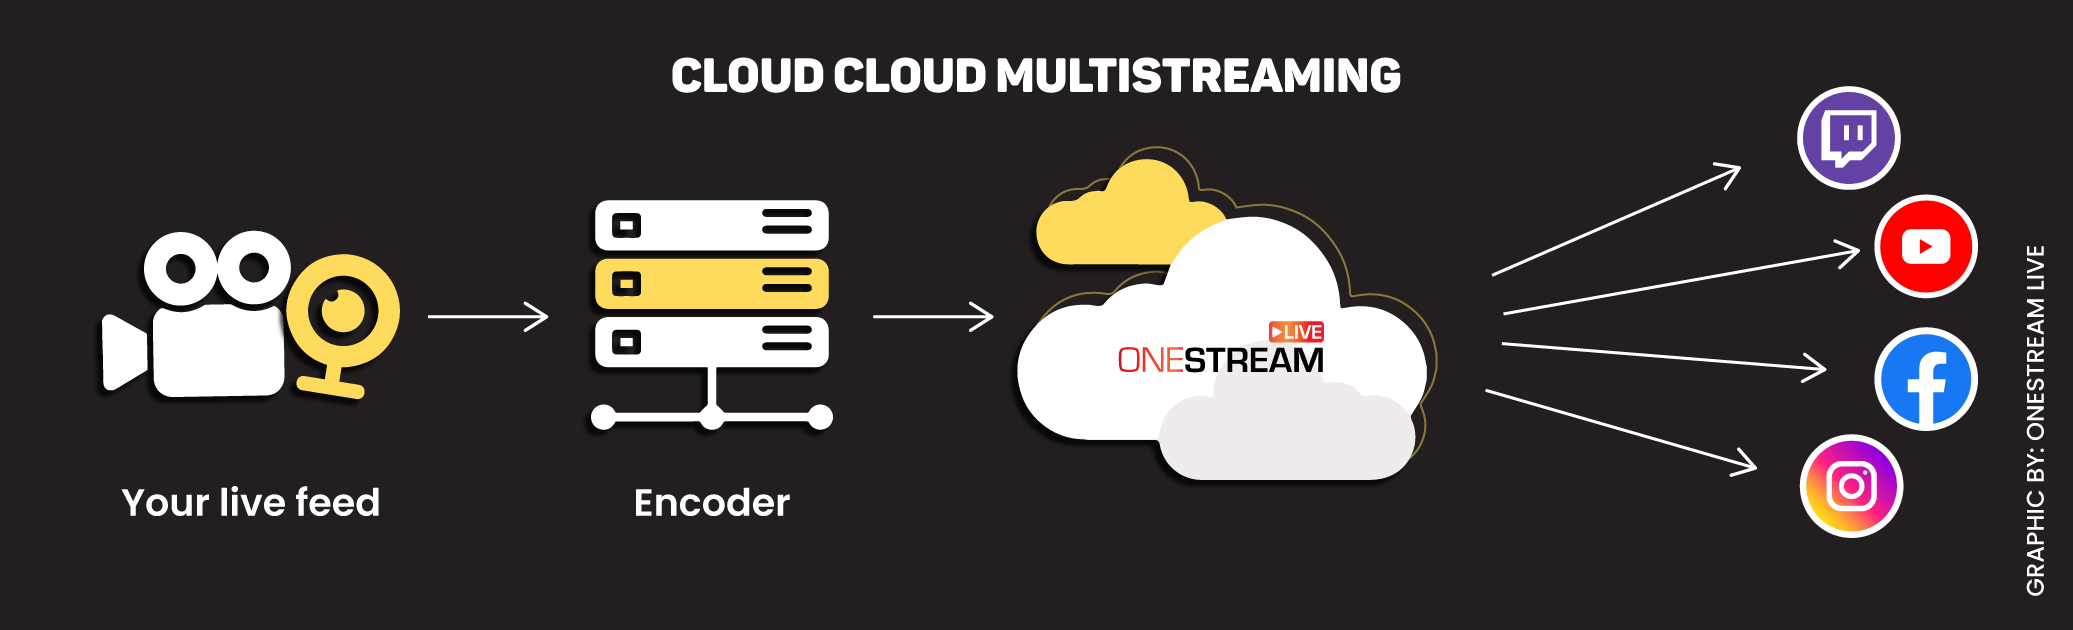 Cloud multistreaming